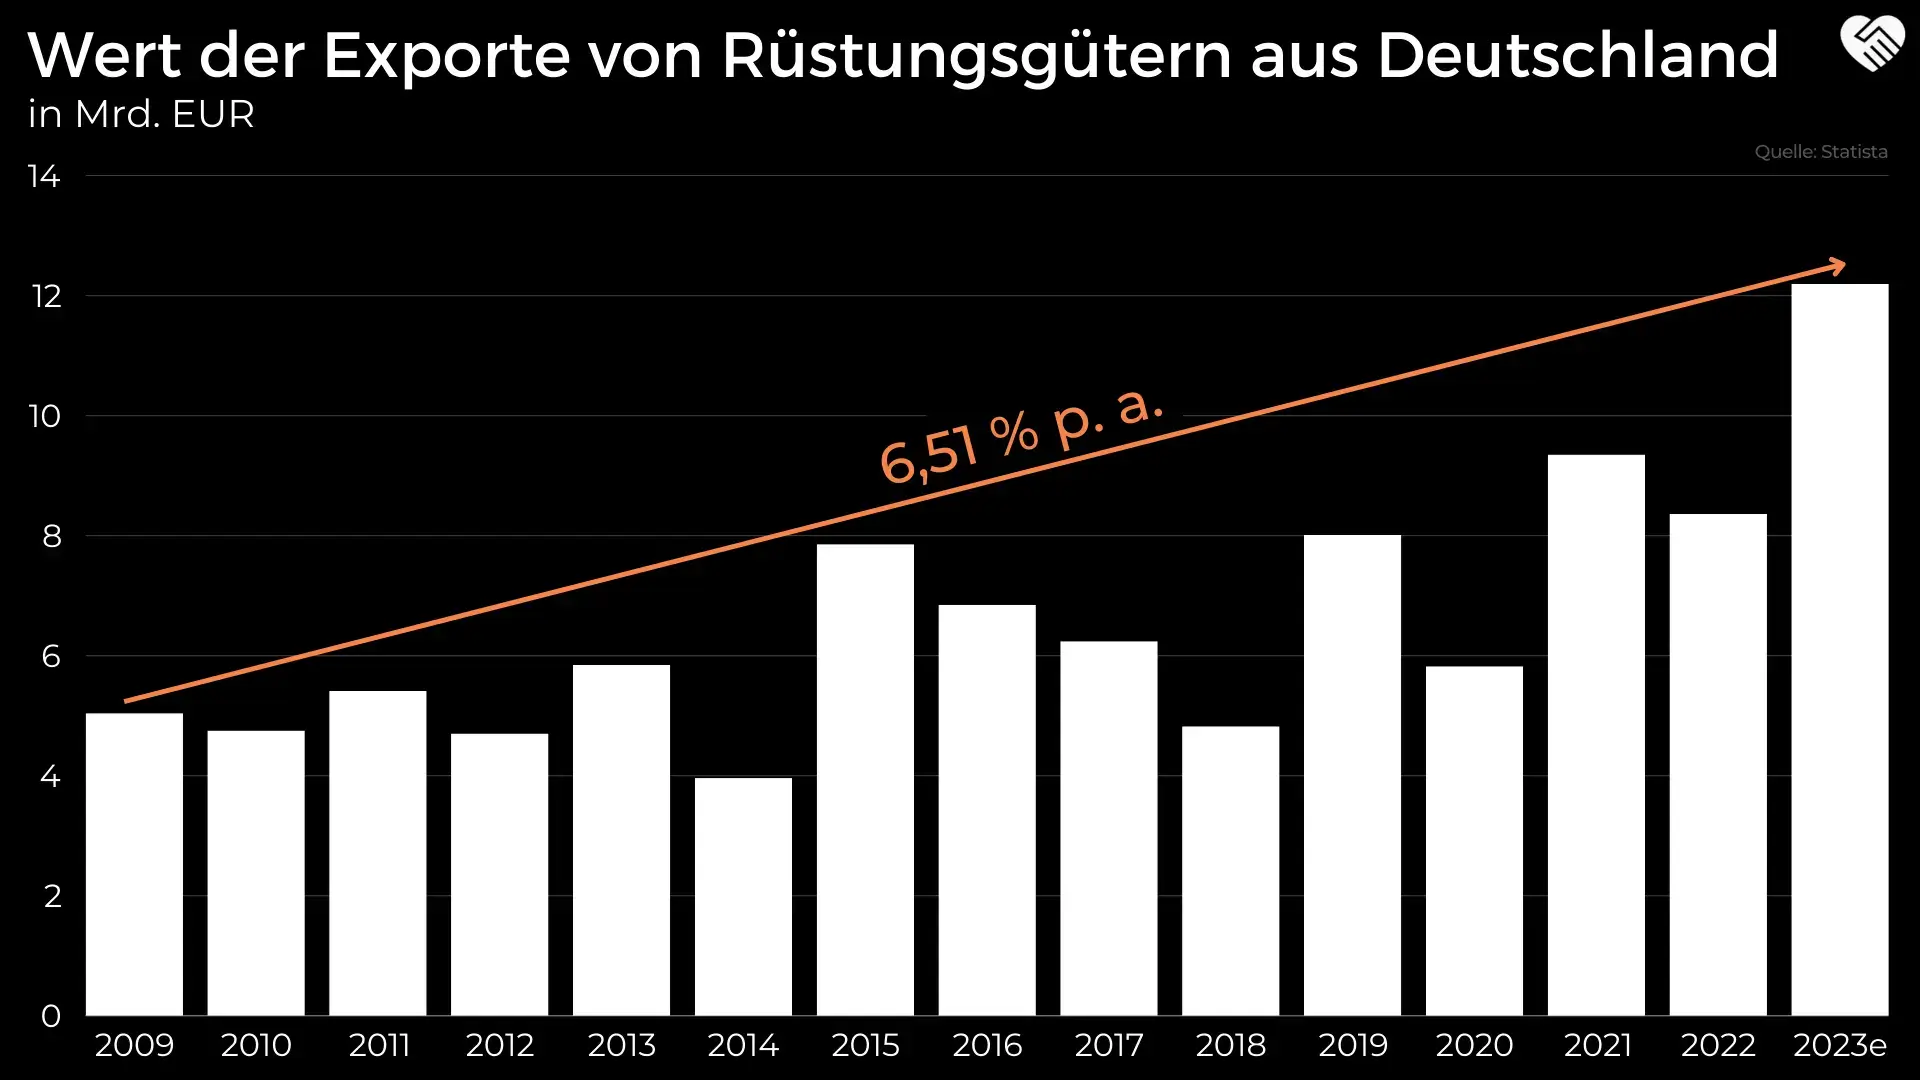 Wert der Exporte von Rüstungsgütern aus Deutschland